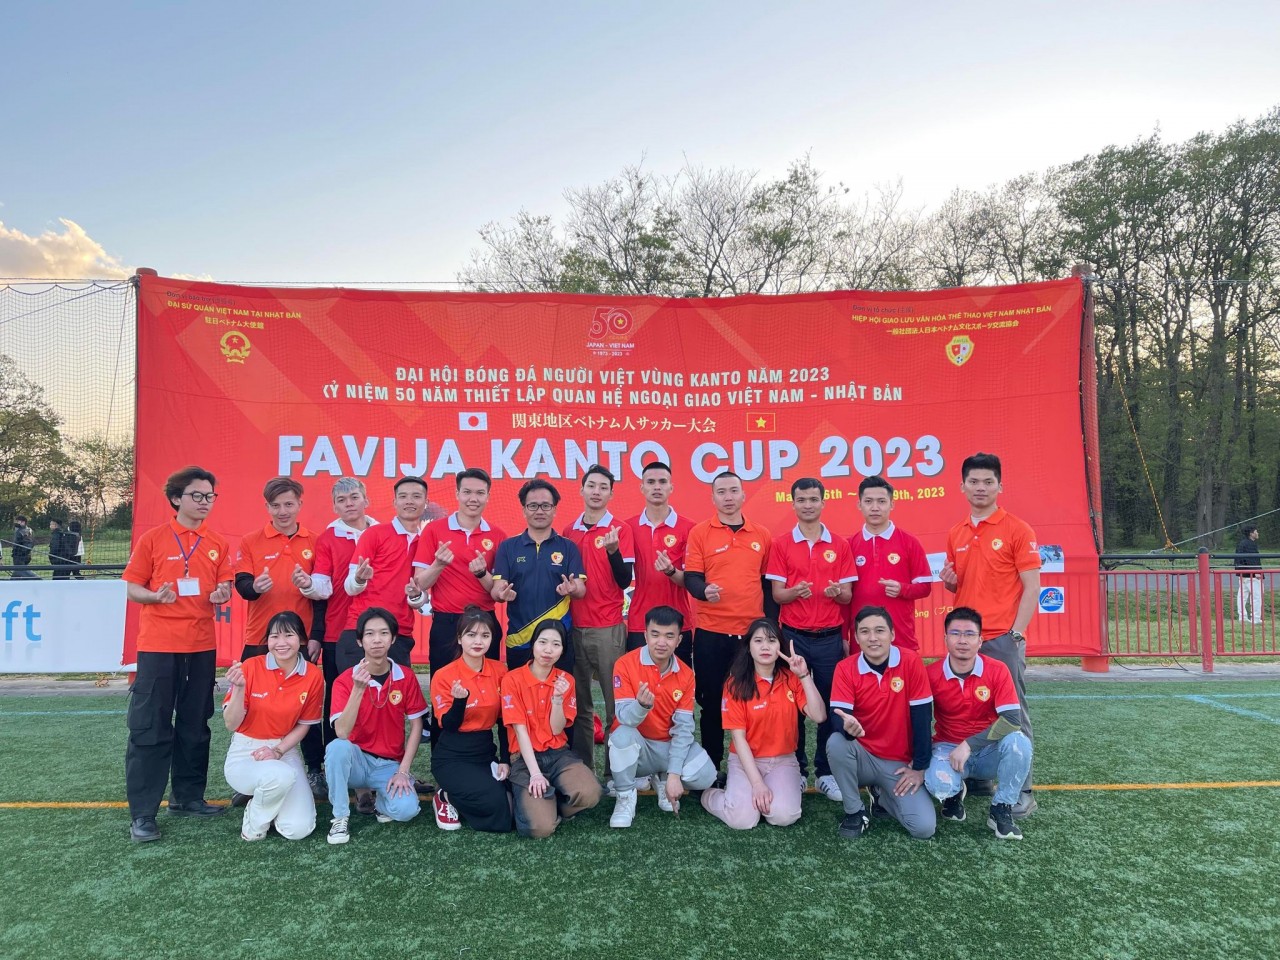 64 đội bóng tranh tài tại giải “FAVIJA KANTO CUP 2023”